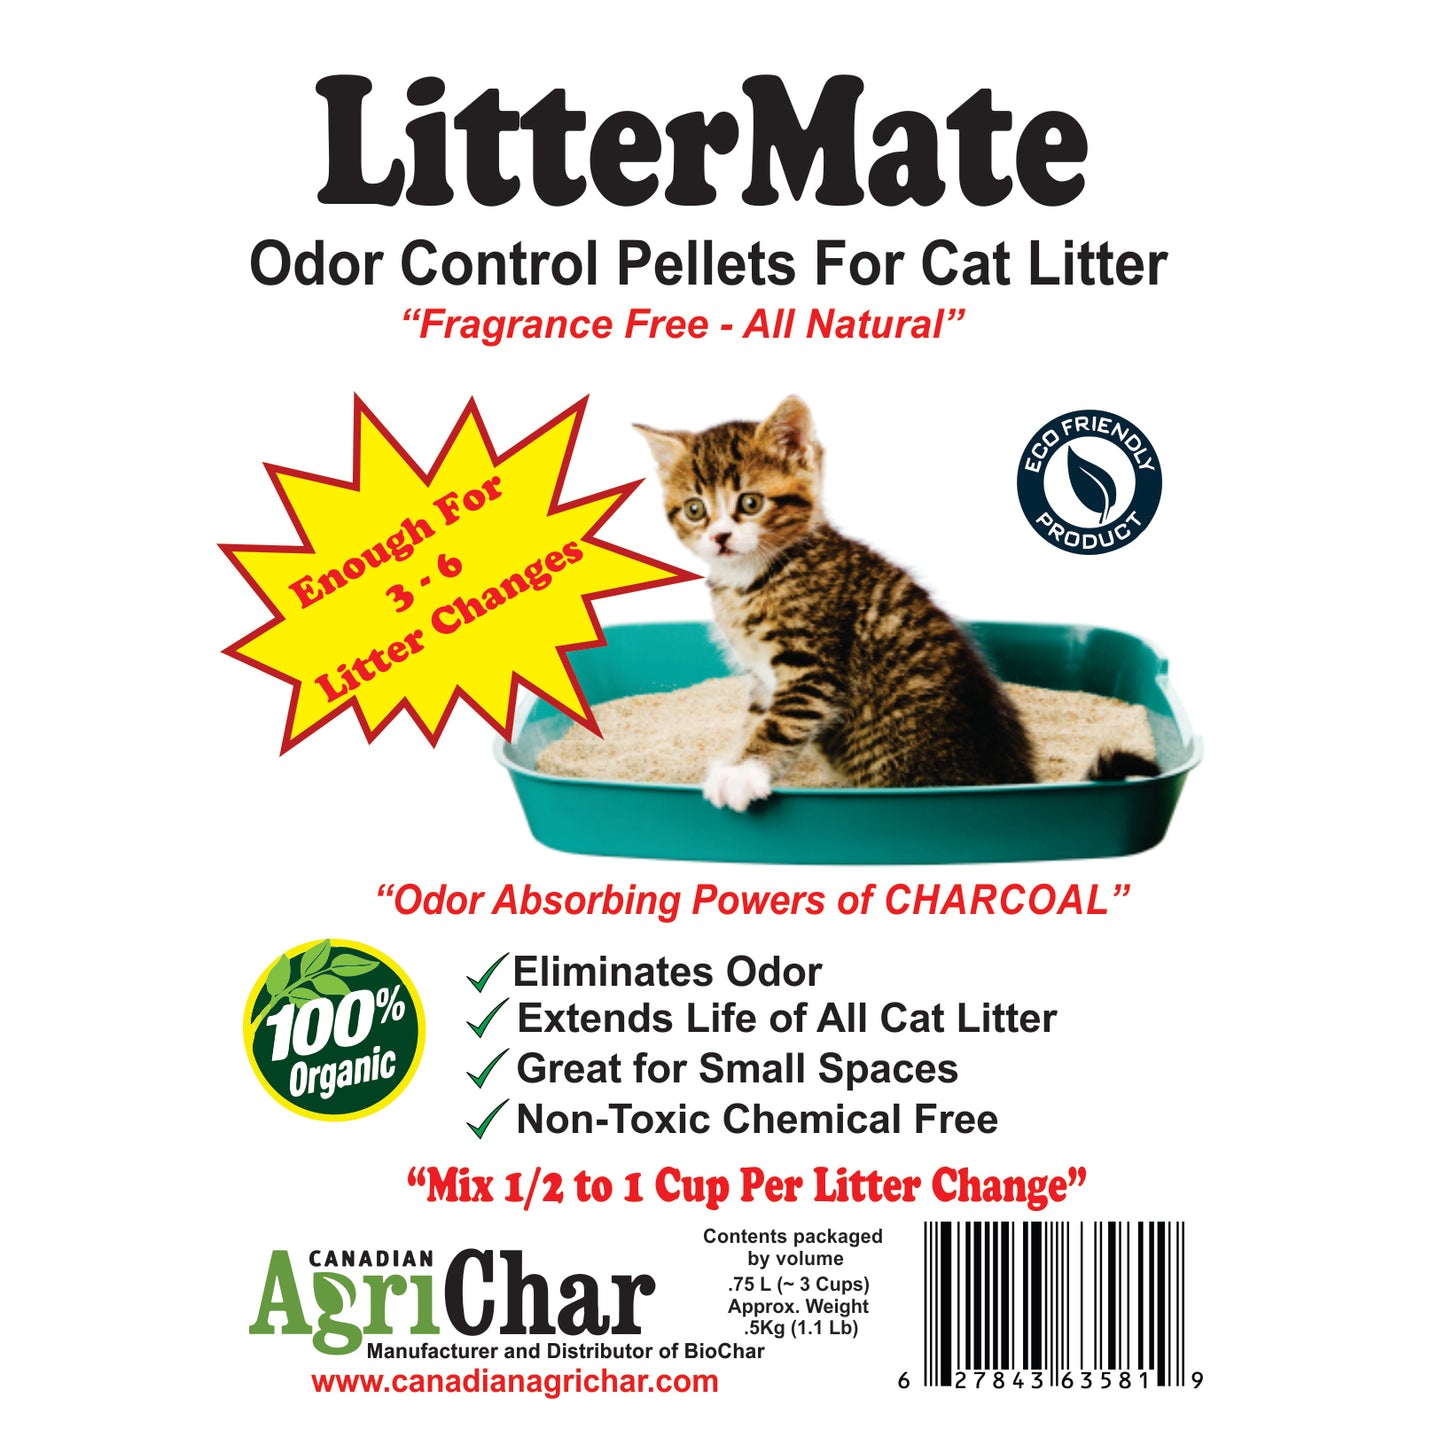 LitterMate